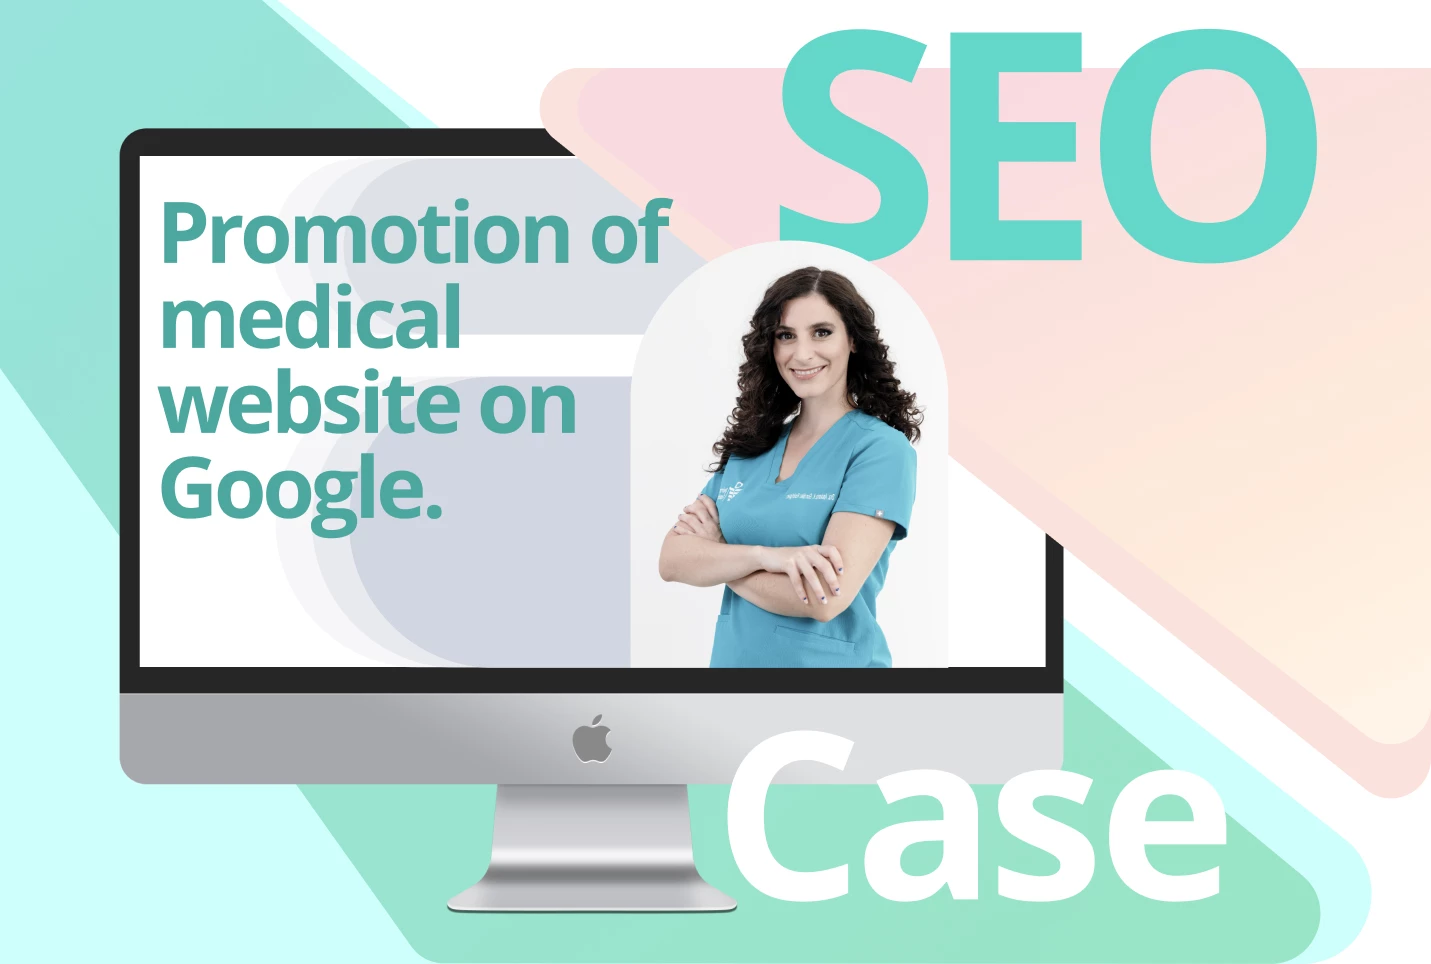 SEO promotion of medical website on Google.